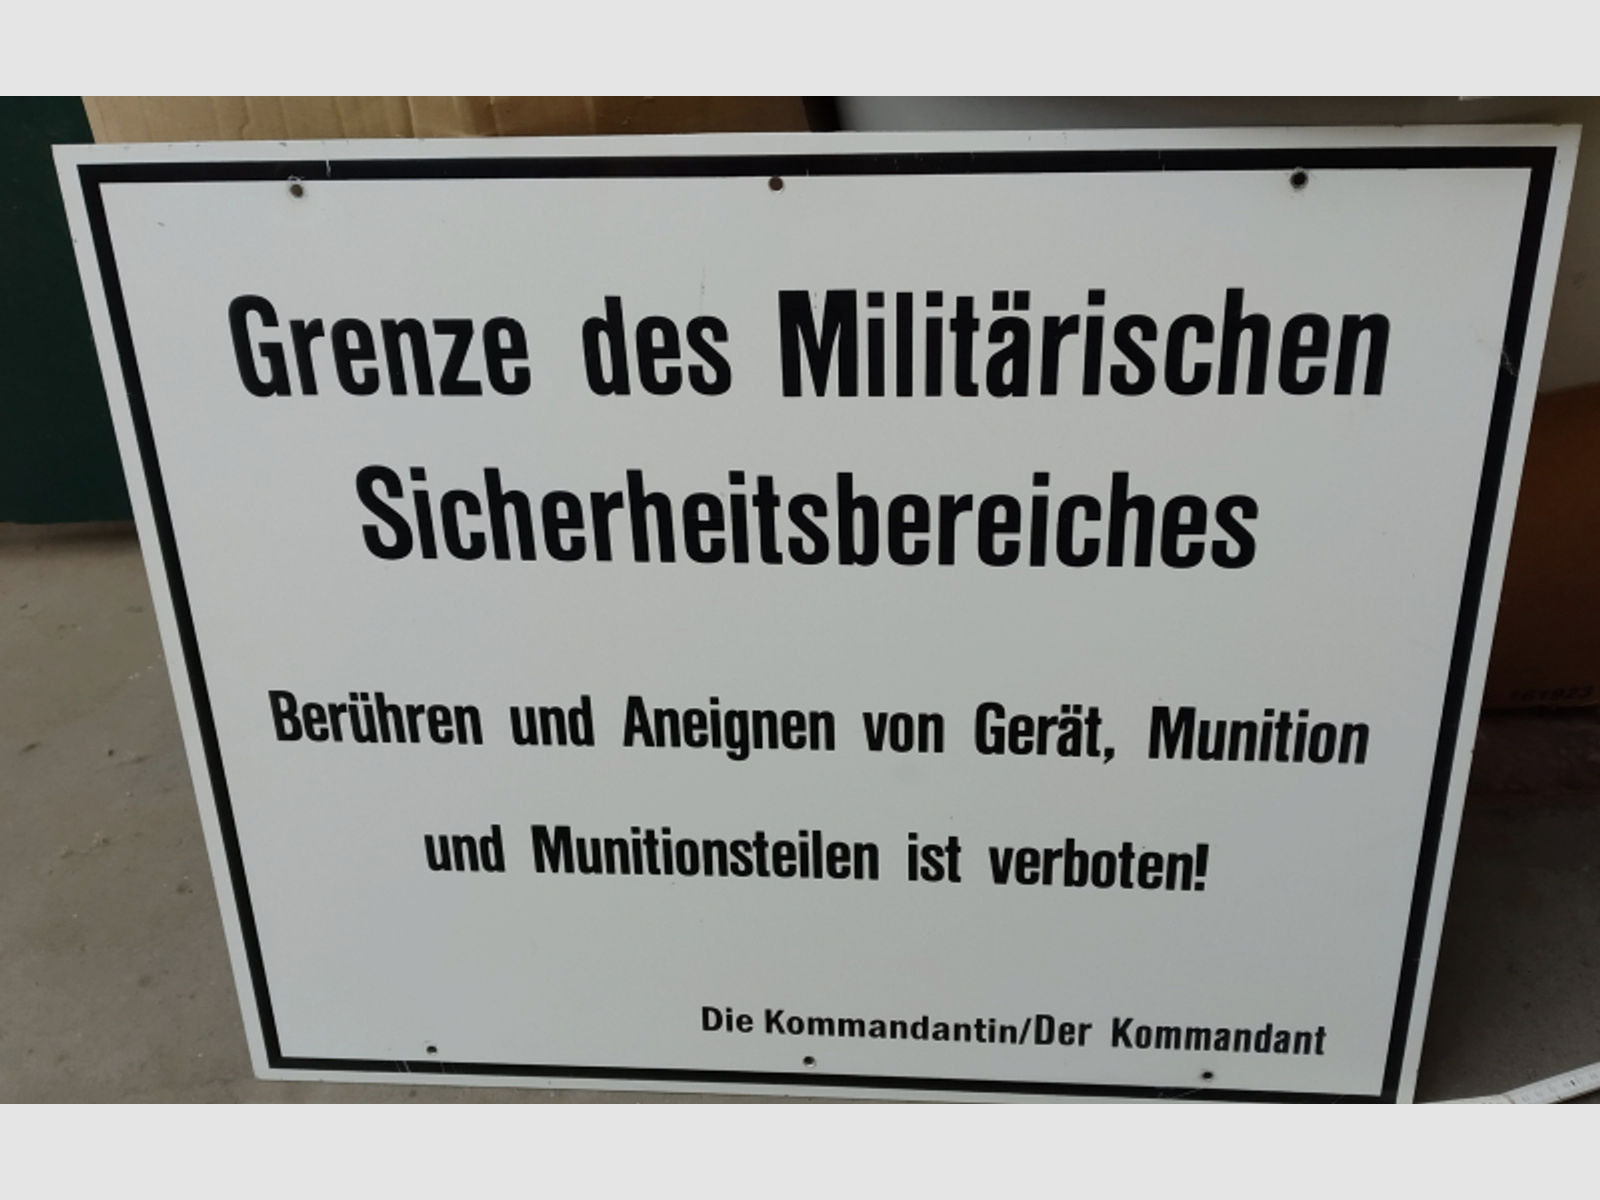 Bodenfund Hinweis-Warn-Schild Militaria-Sammlerstück Blechtafel